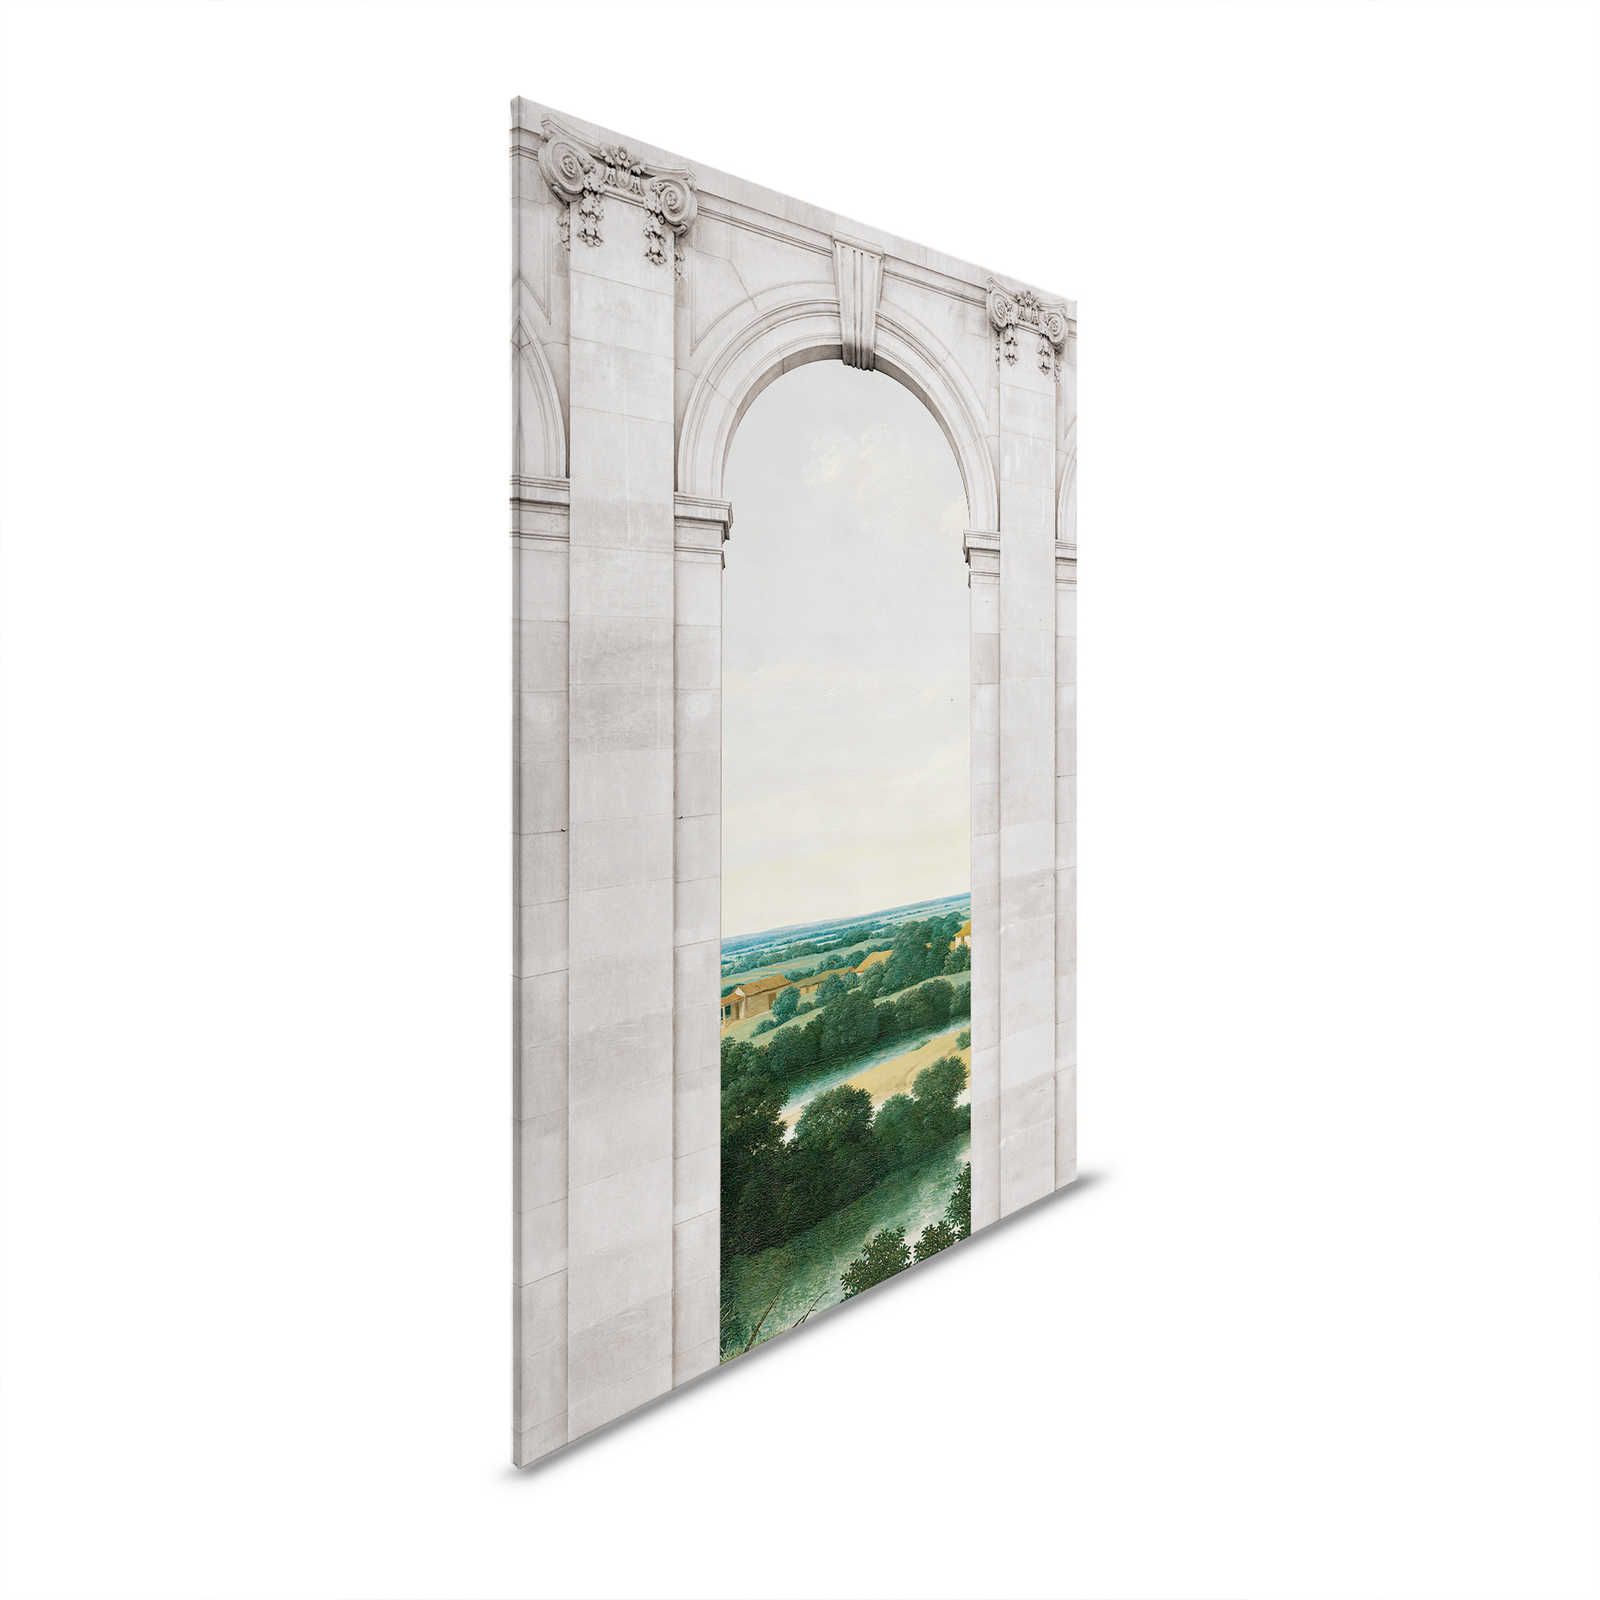         Castello 2 - Window Canvas Painting Arch & View Landscape - 0.90 m x 0.60 m
    